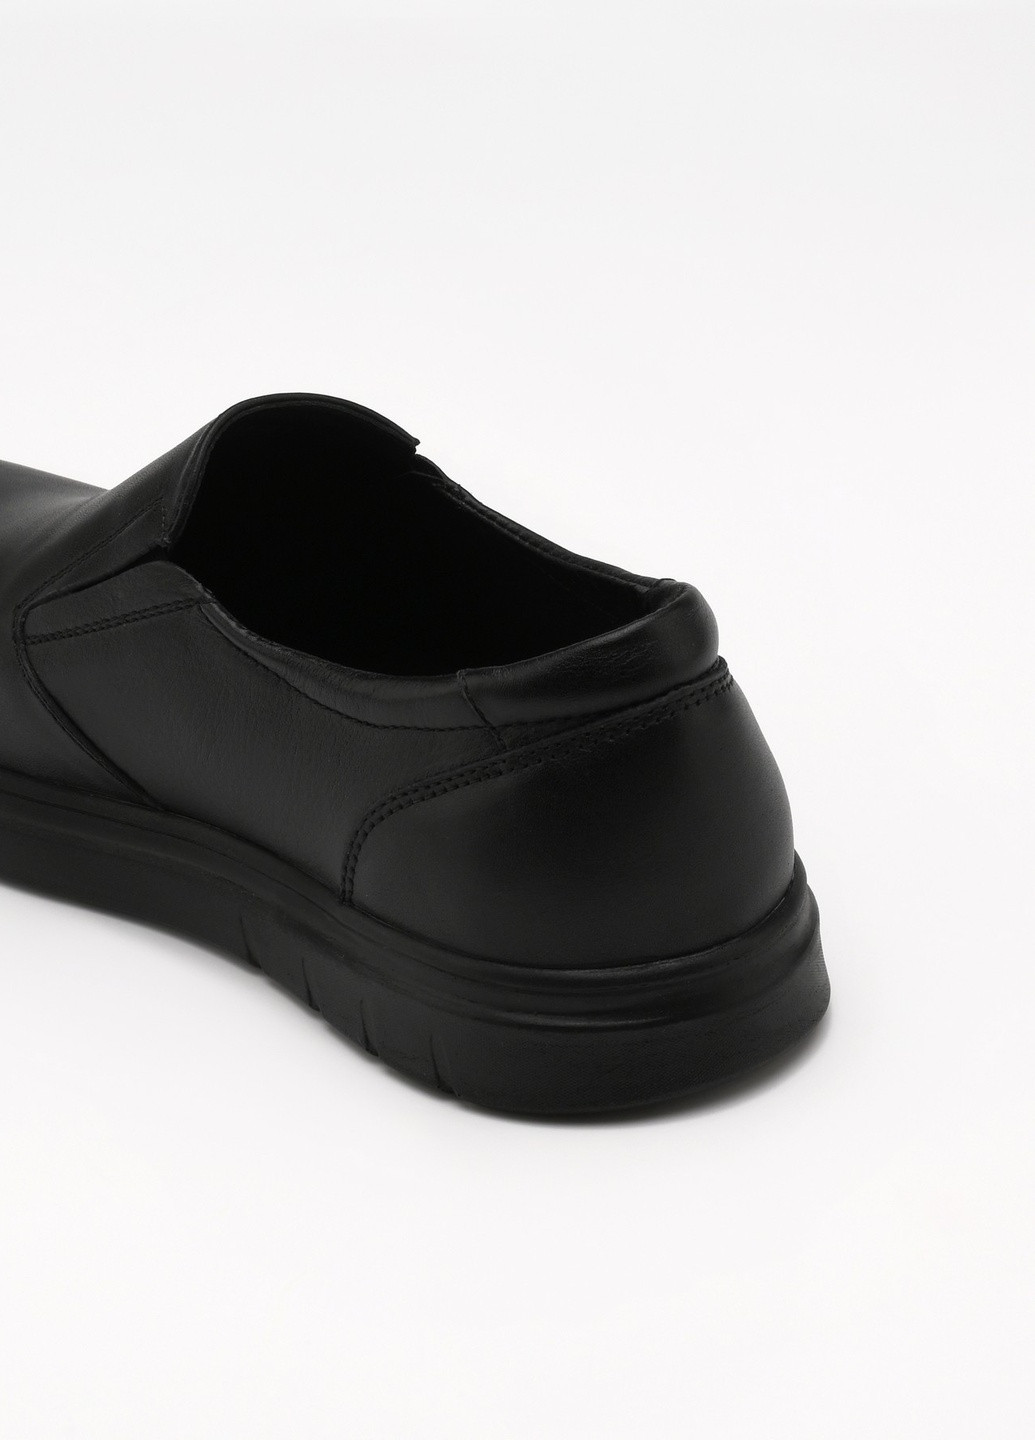 Черные повседневные туфли Karat